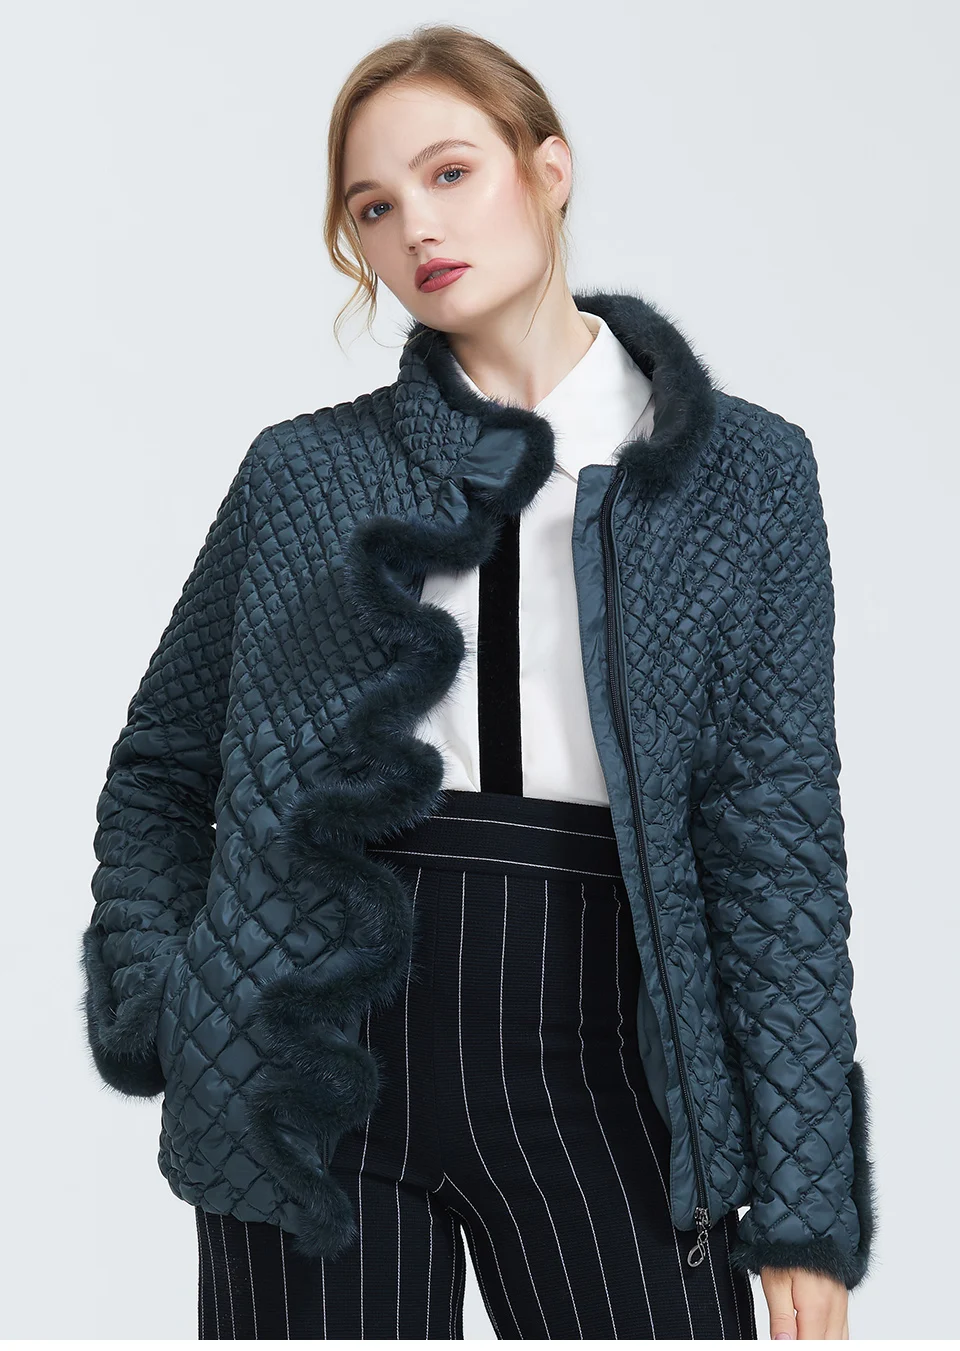 Astrid Зима новое поступление женская куртка верхняя одежда высокое качество короткий стиль фиолетовый цвет новая мода зимнее пальто для женщин AM-8828